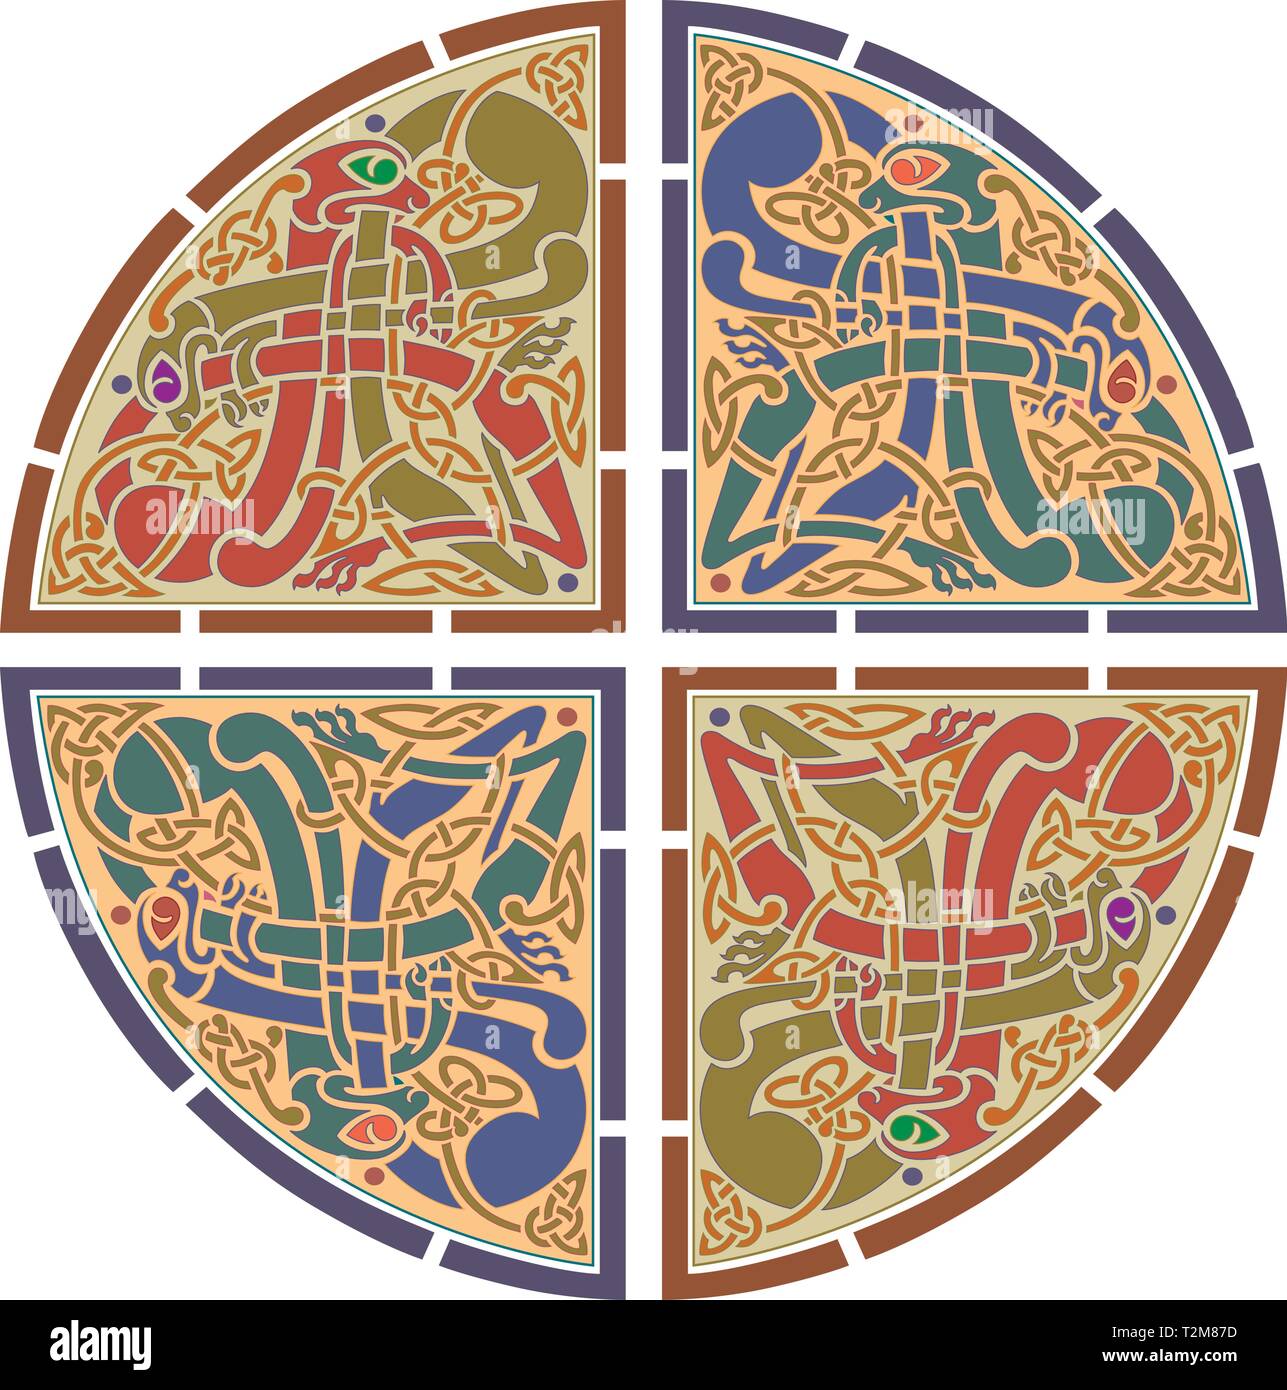 Nodo modello celtico, isolato i simboli di schizzo design per uso in modelli e campioni per tatuaggio e vari disegni e modelli - Vettore Illustrazione Vettoriale